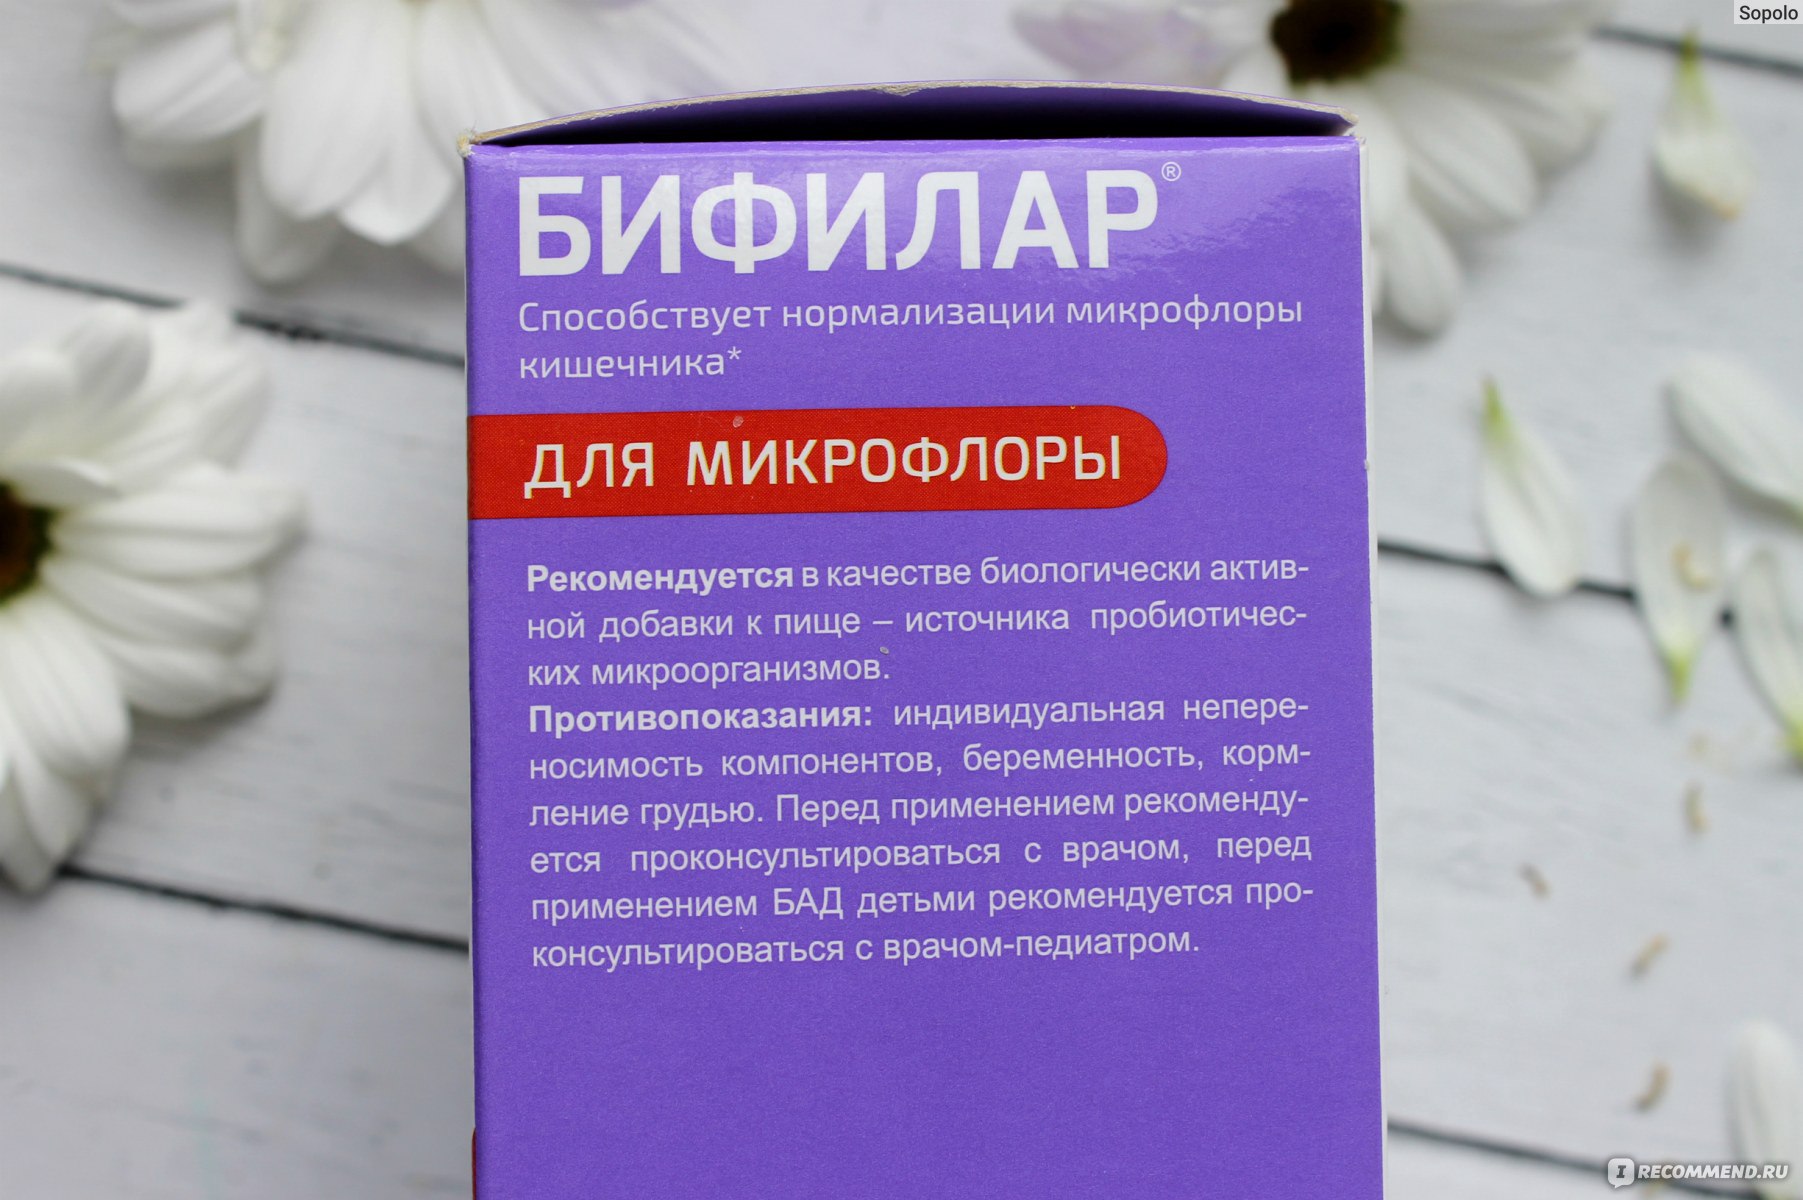 Свечи от неприятного запаха. Препараты для восстановления вагинальной микрофлоры. Таблетки для восстановления Флоры влагалища. Вагинальные свечи для восстановления. Лекарство для нормализации микрофлоры у женщин.